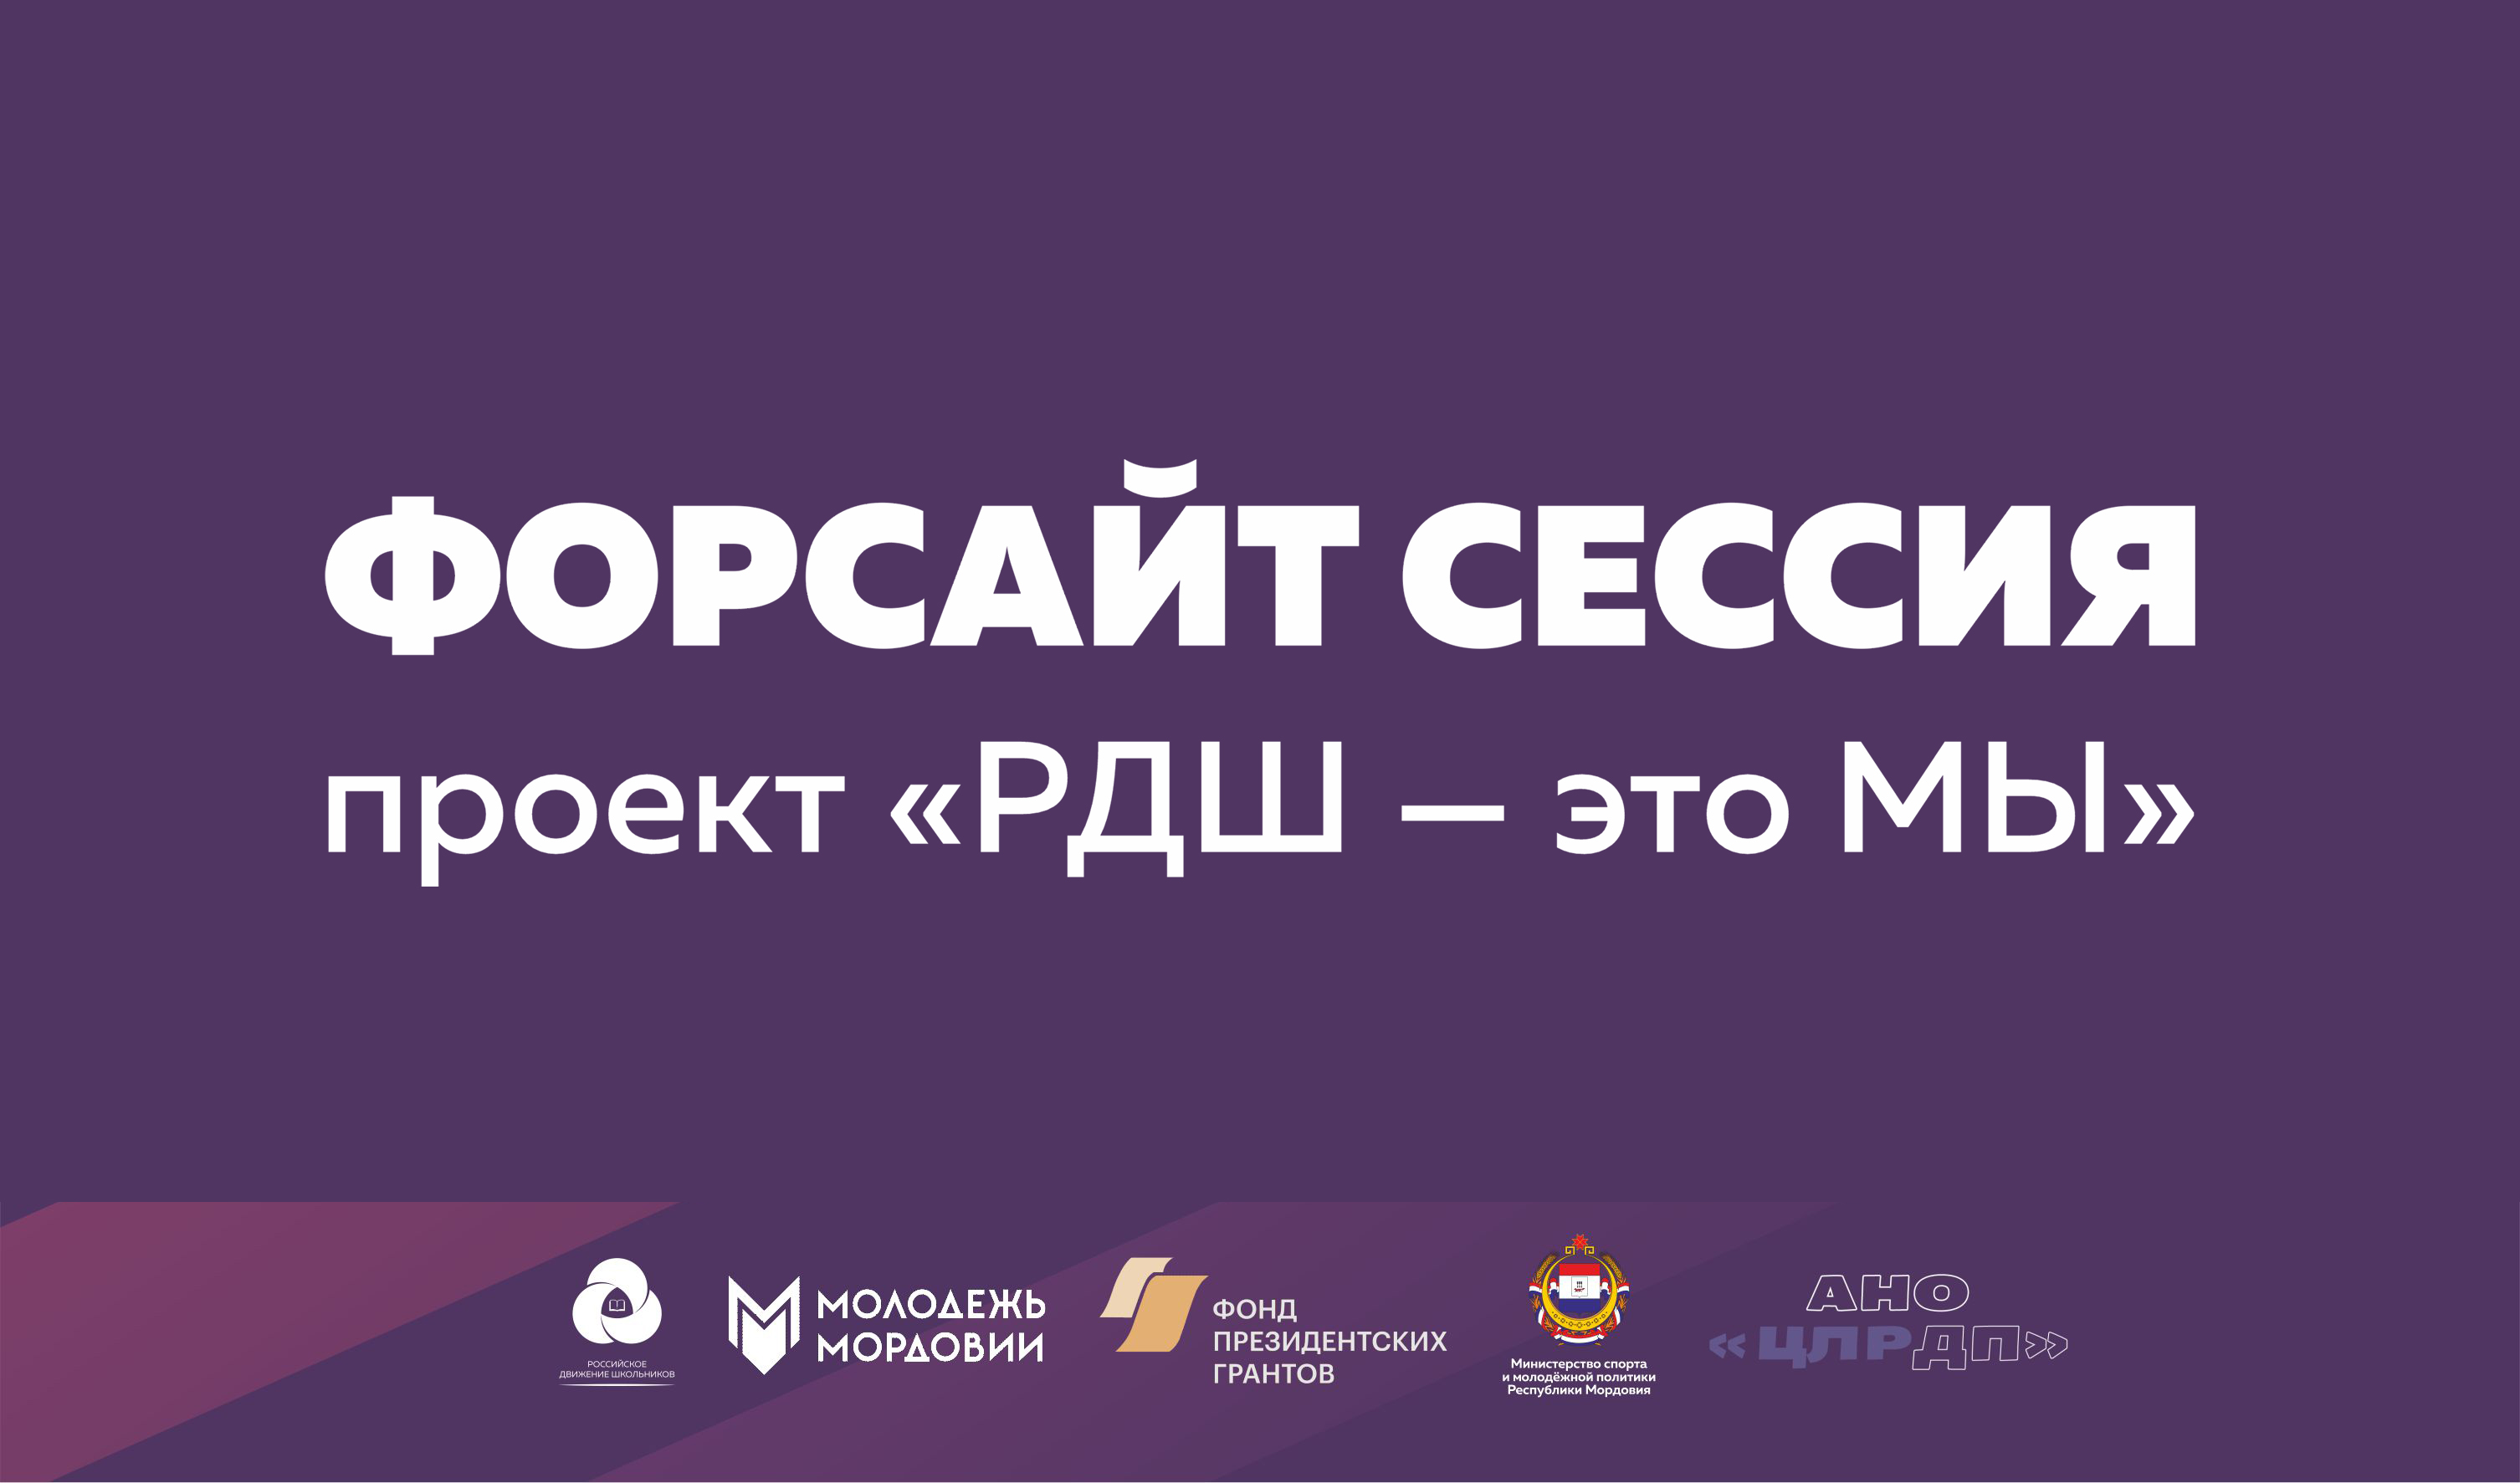 В Республике Мордовия стартует комплексная программа проекта «РДШ – это МЫ»